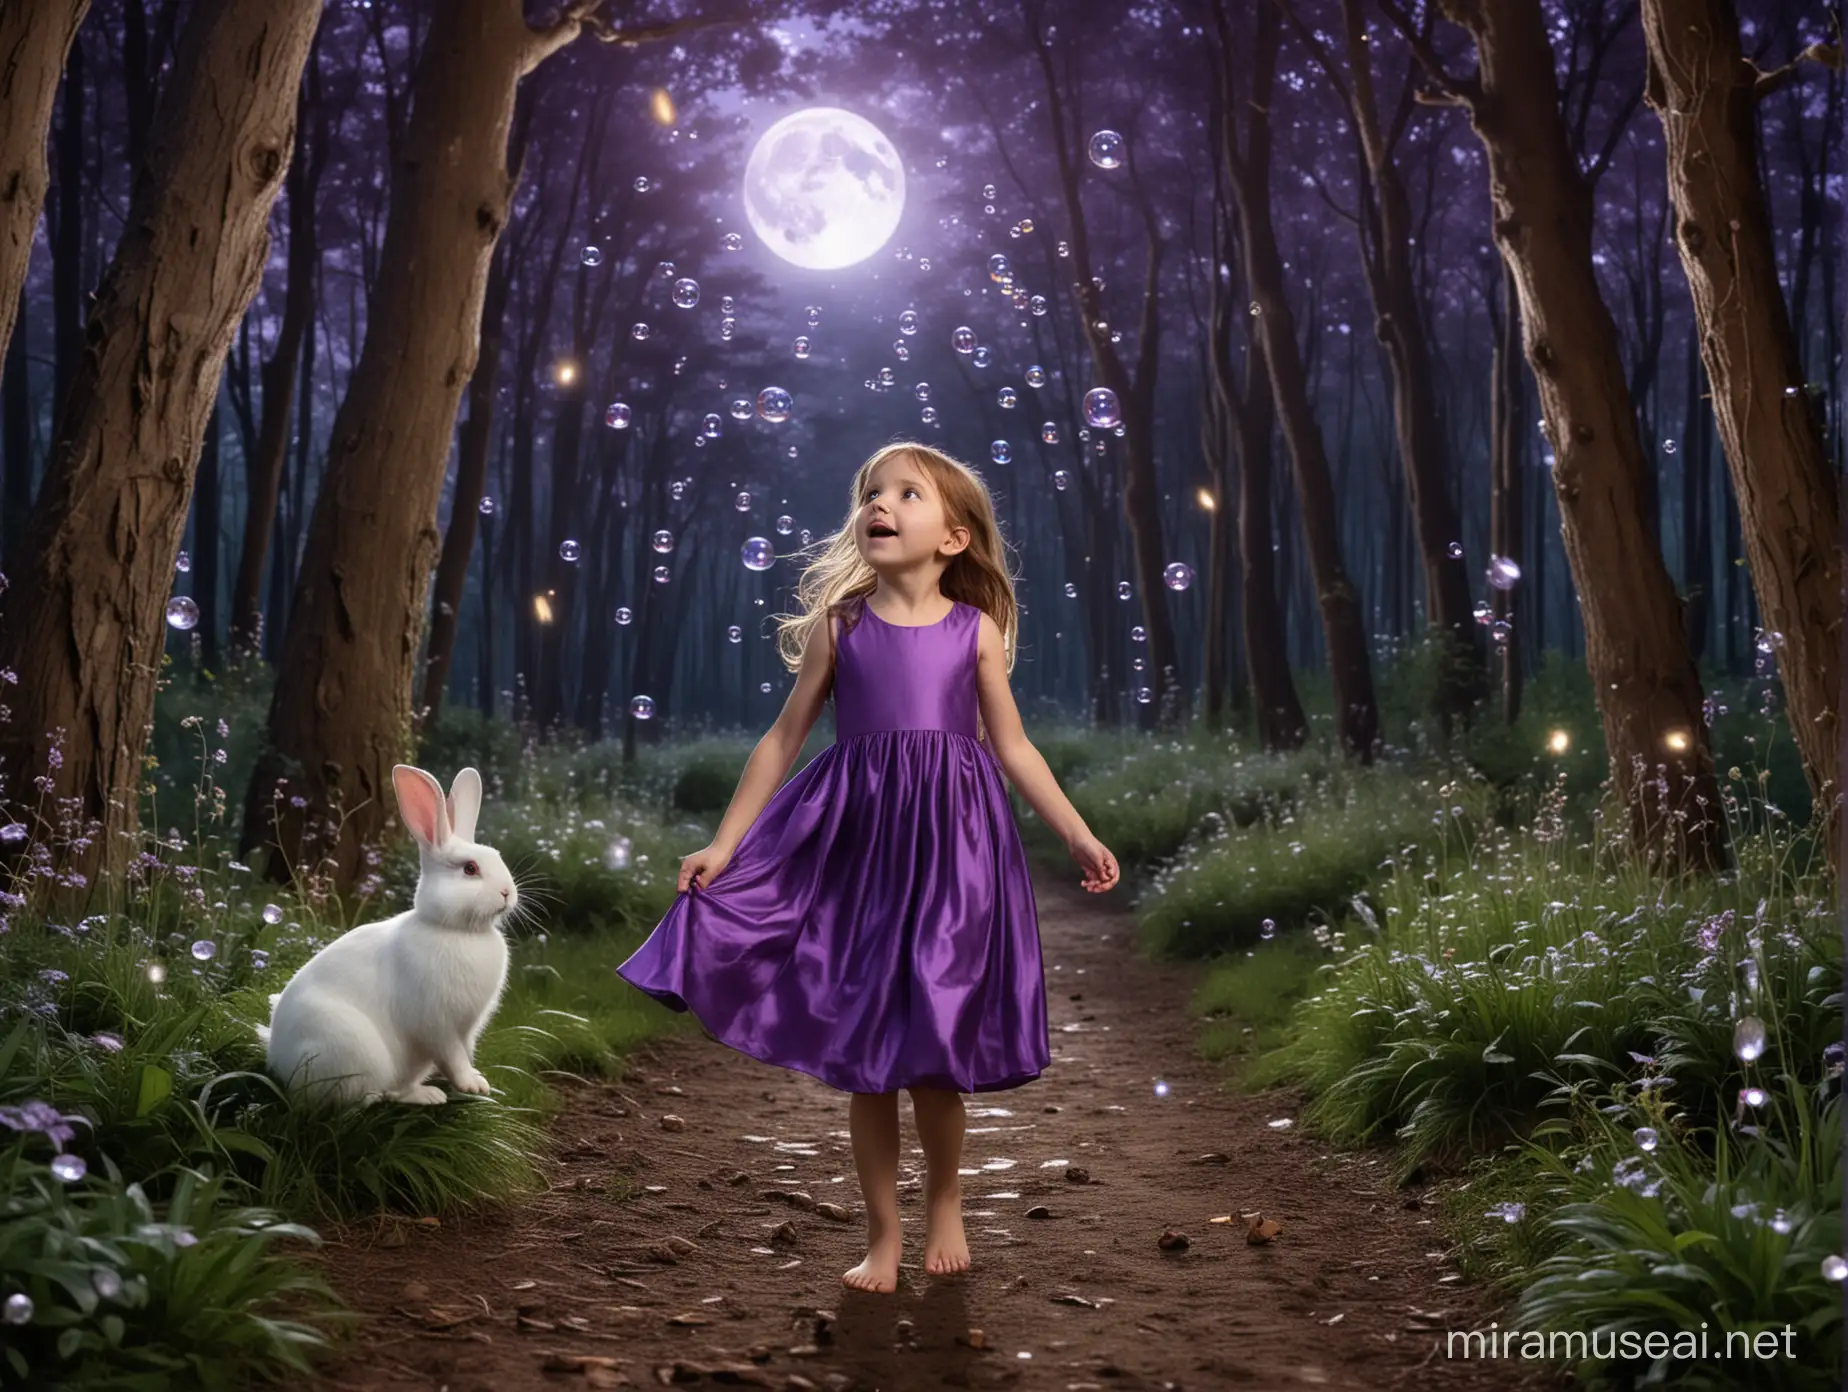 une petite fille de 6 ans surprise la bouche entre-ouverte, cheveux châtain, robe violette, pieds nus dans une forêt magique la nuit. La lune est dans le ciel. Des choses lumineuses flottent dans l'air avec des bulles. Un lapin blanc la suit. Il y a des fées dans cette forêt